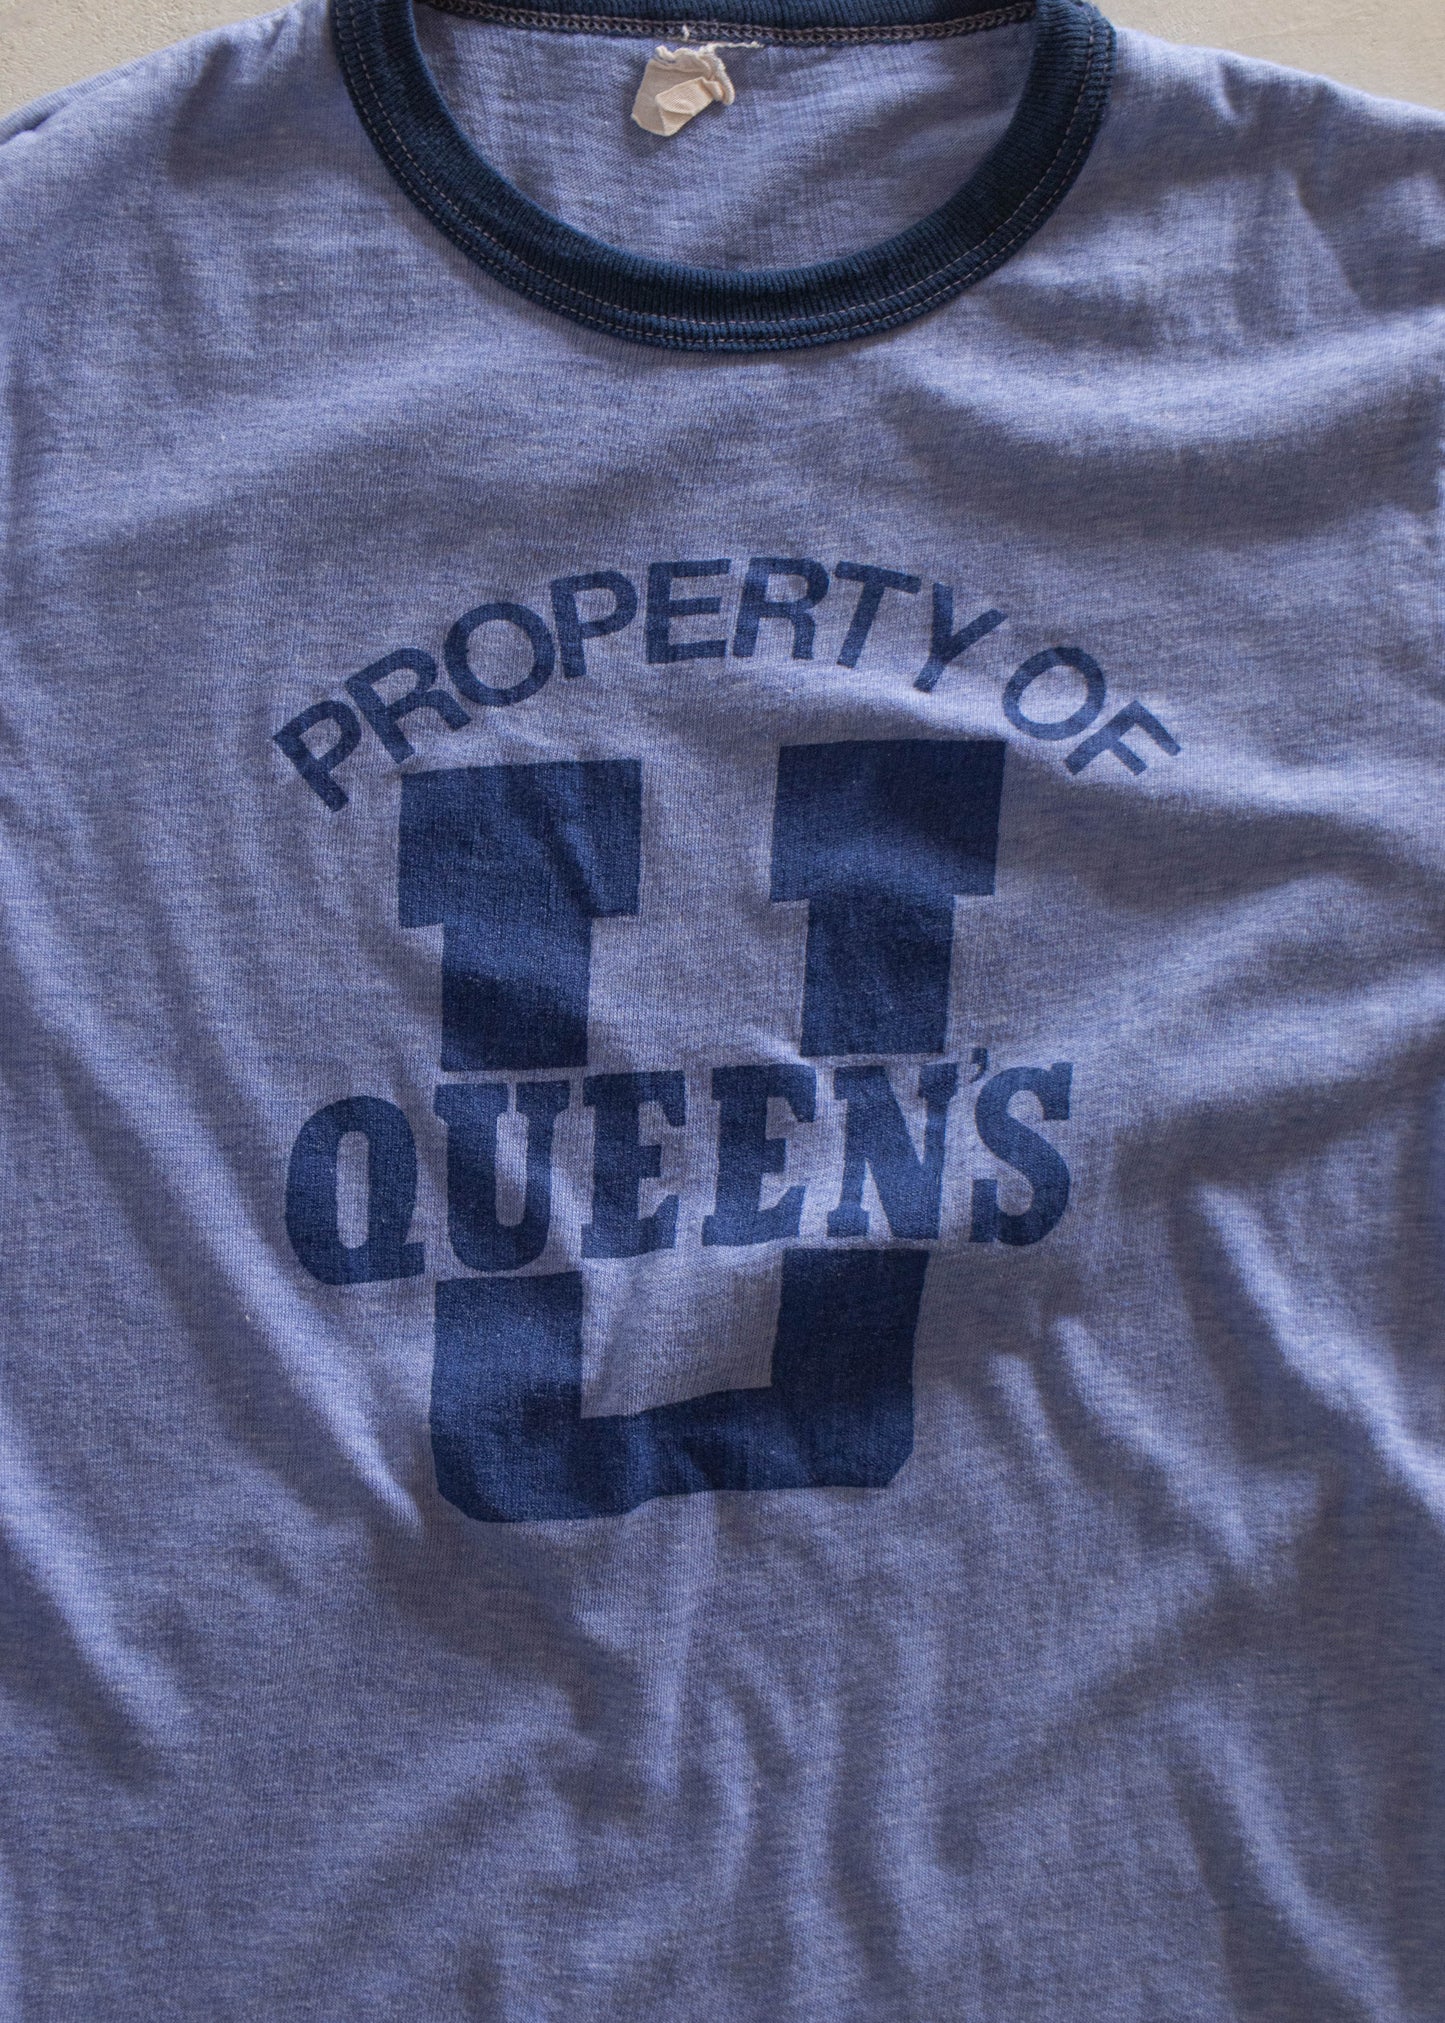 1980s Queen University Souvenir T-Shirt Size 2XS/XS